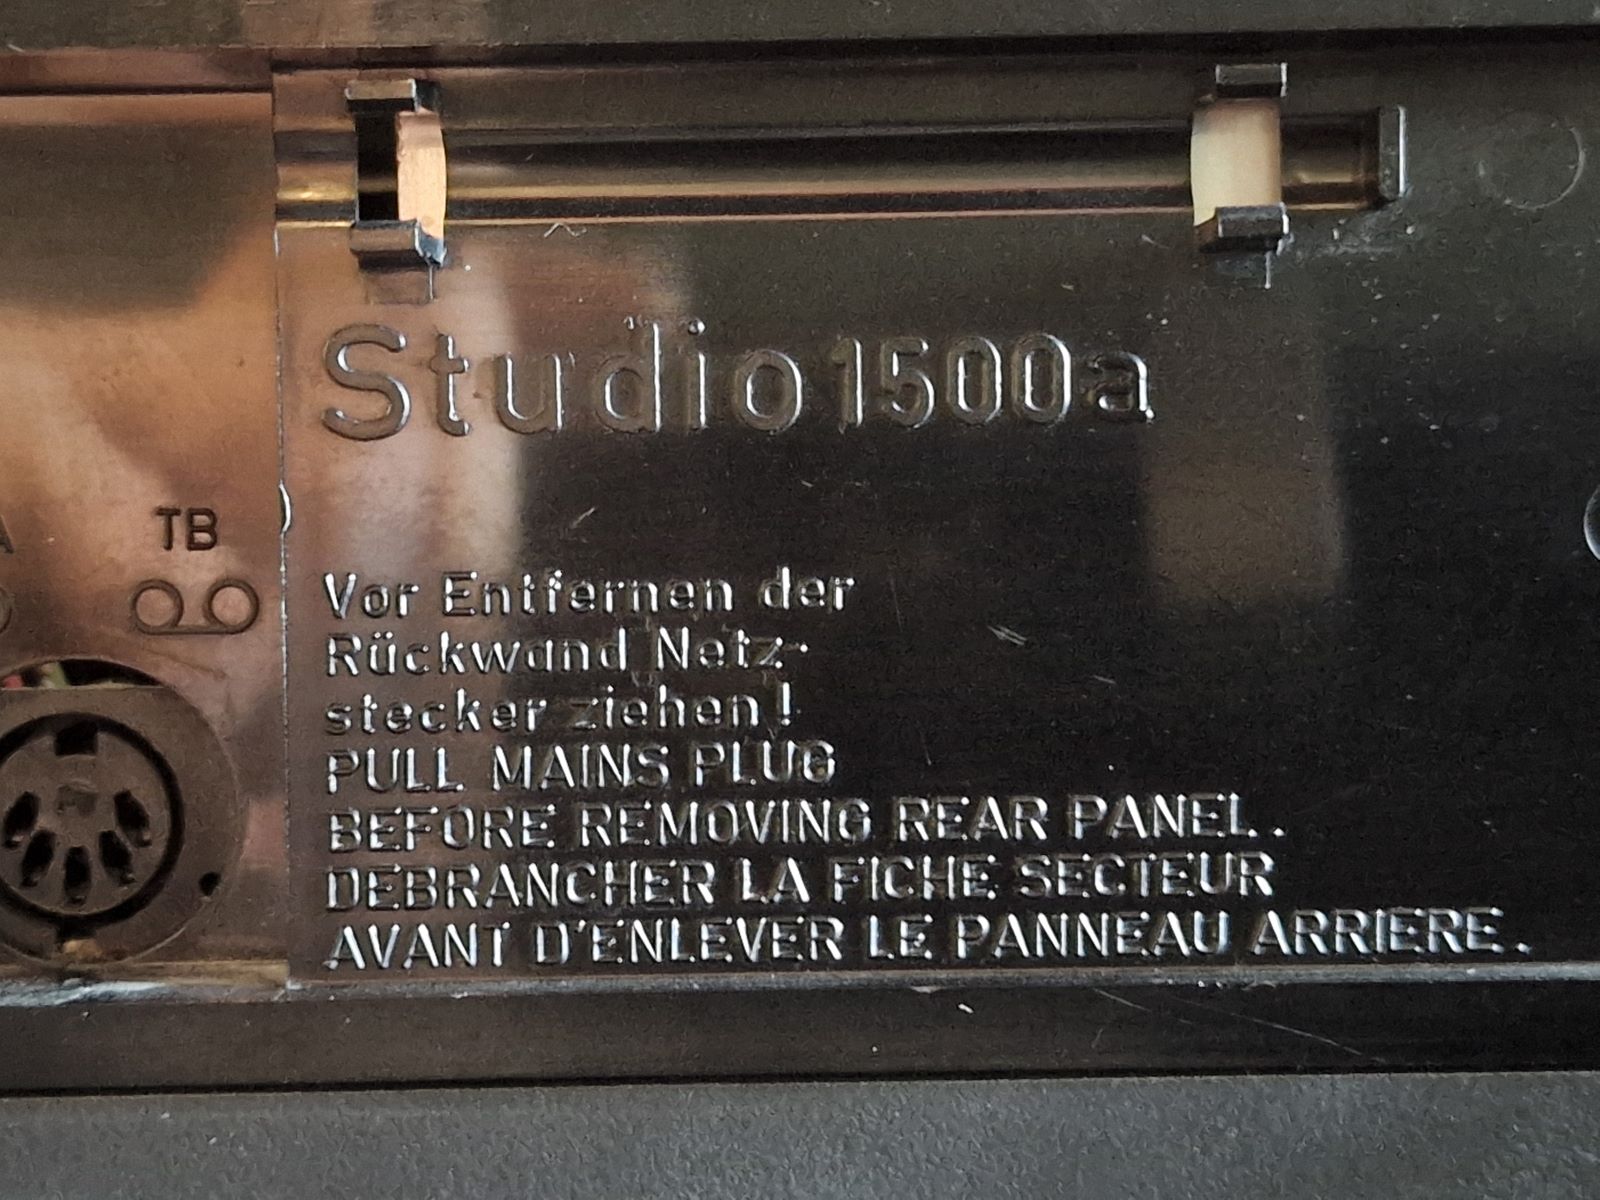 Grundig Studio 1500 eigen versterker + speakers 